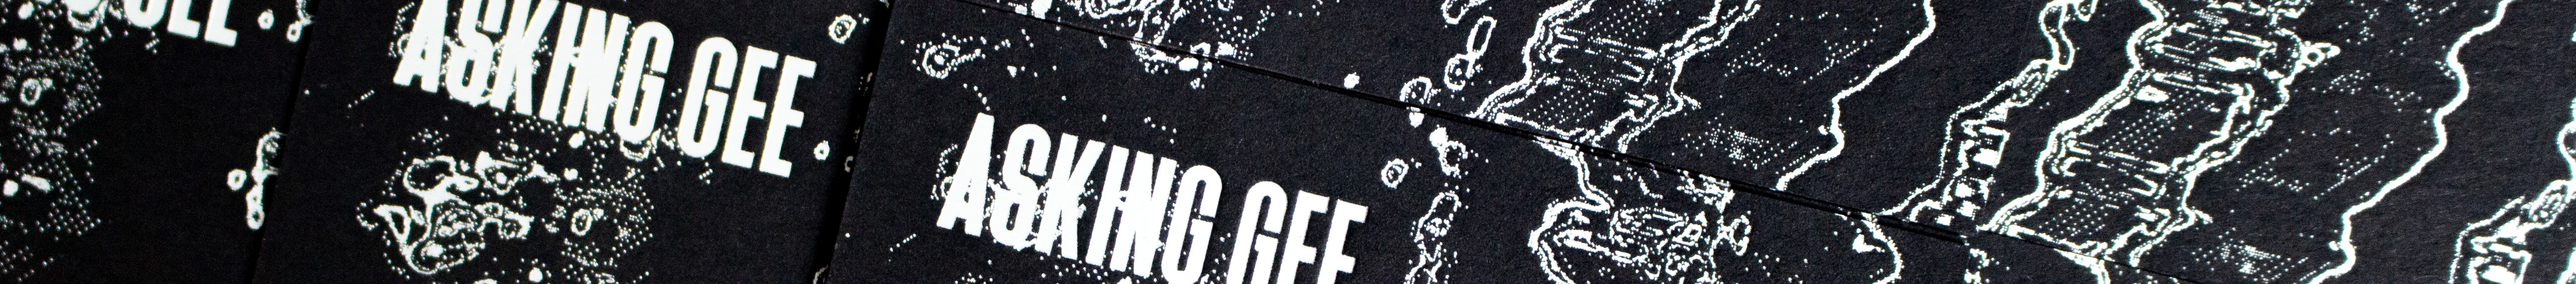 Profil-Banner von Asking Gee